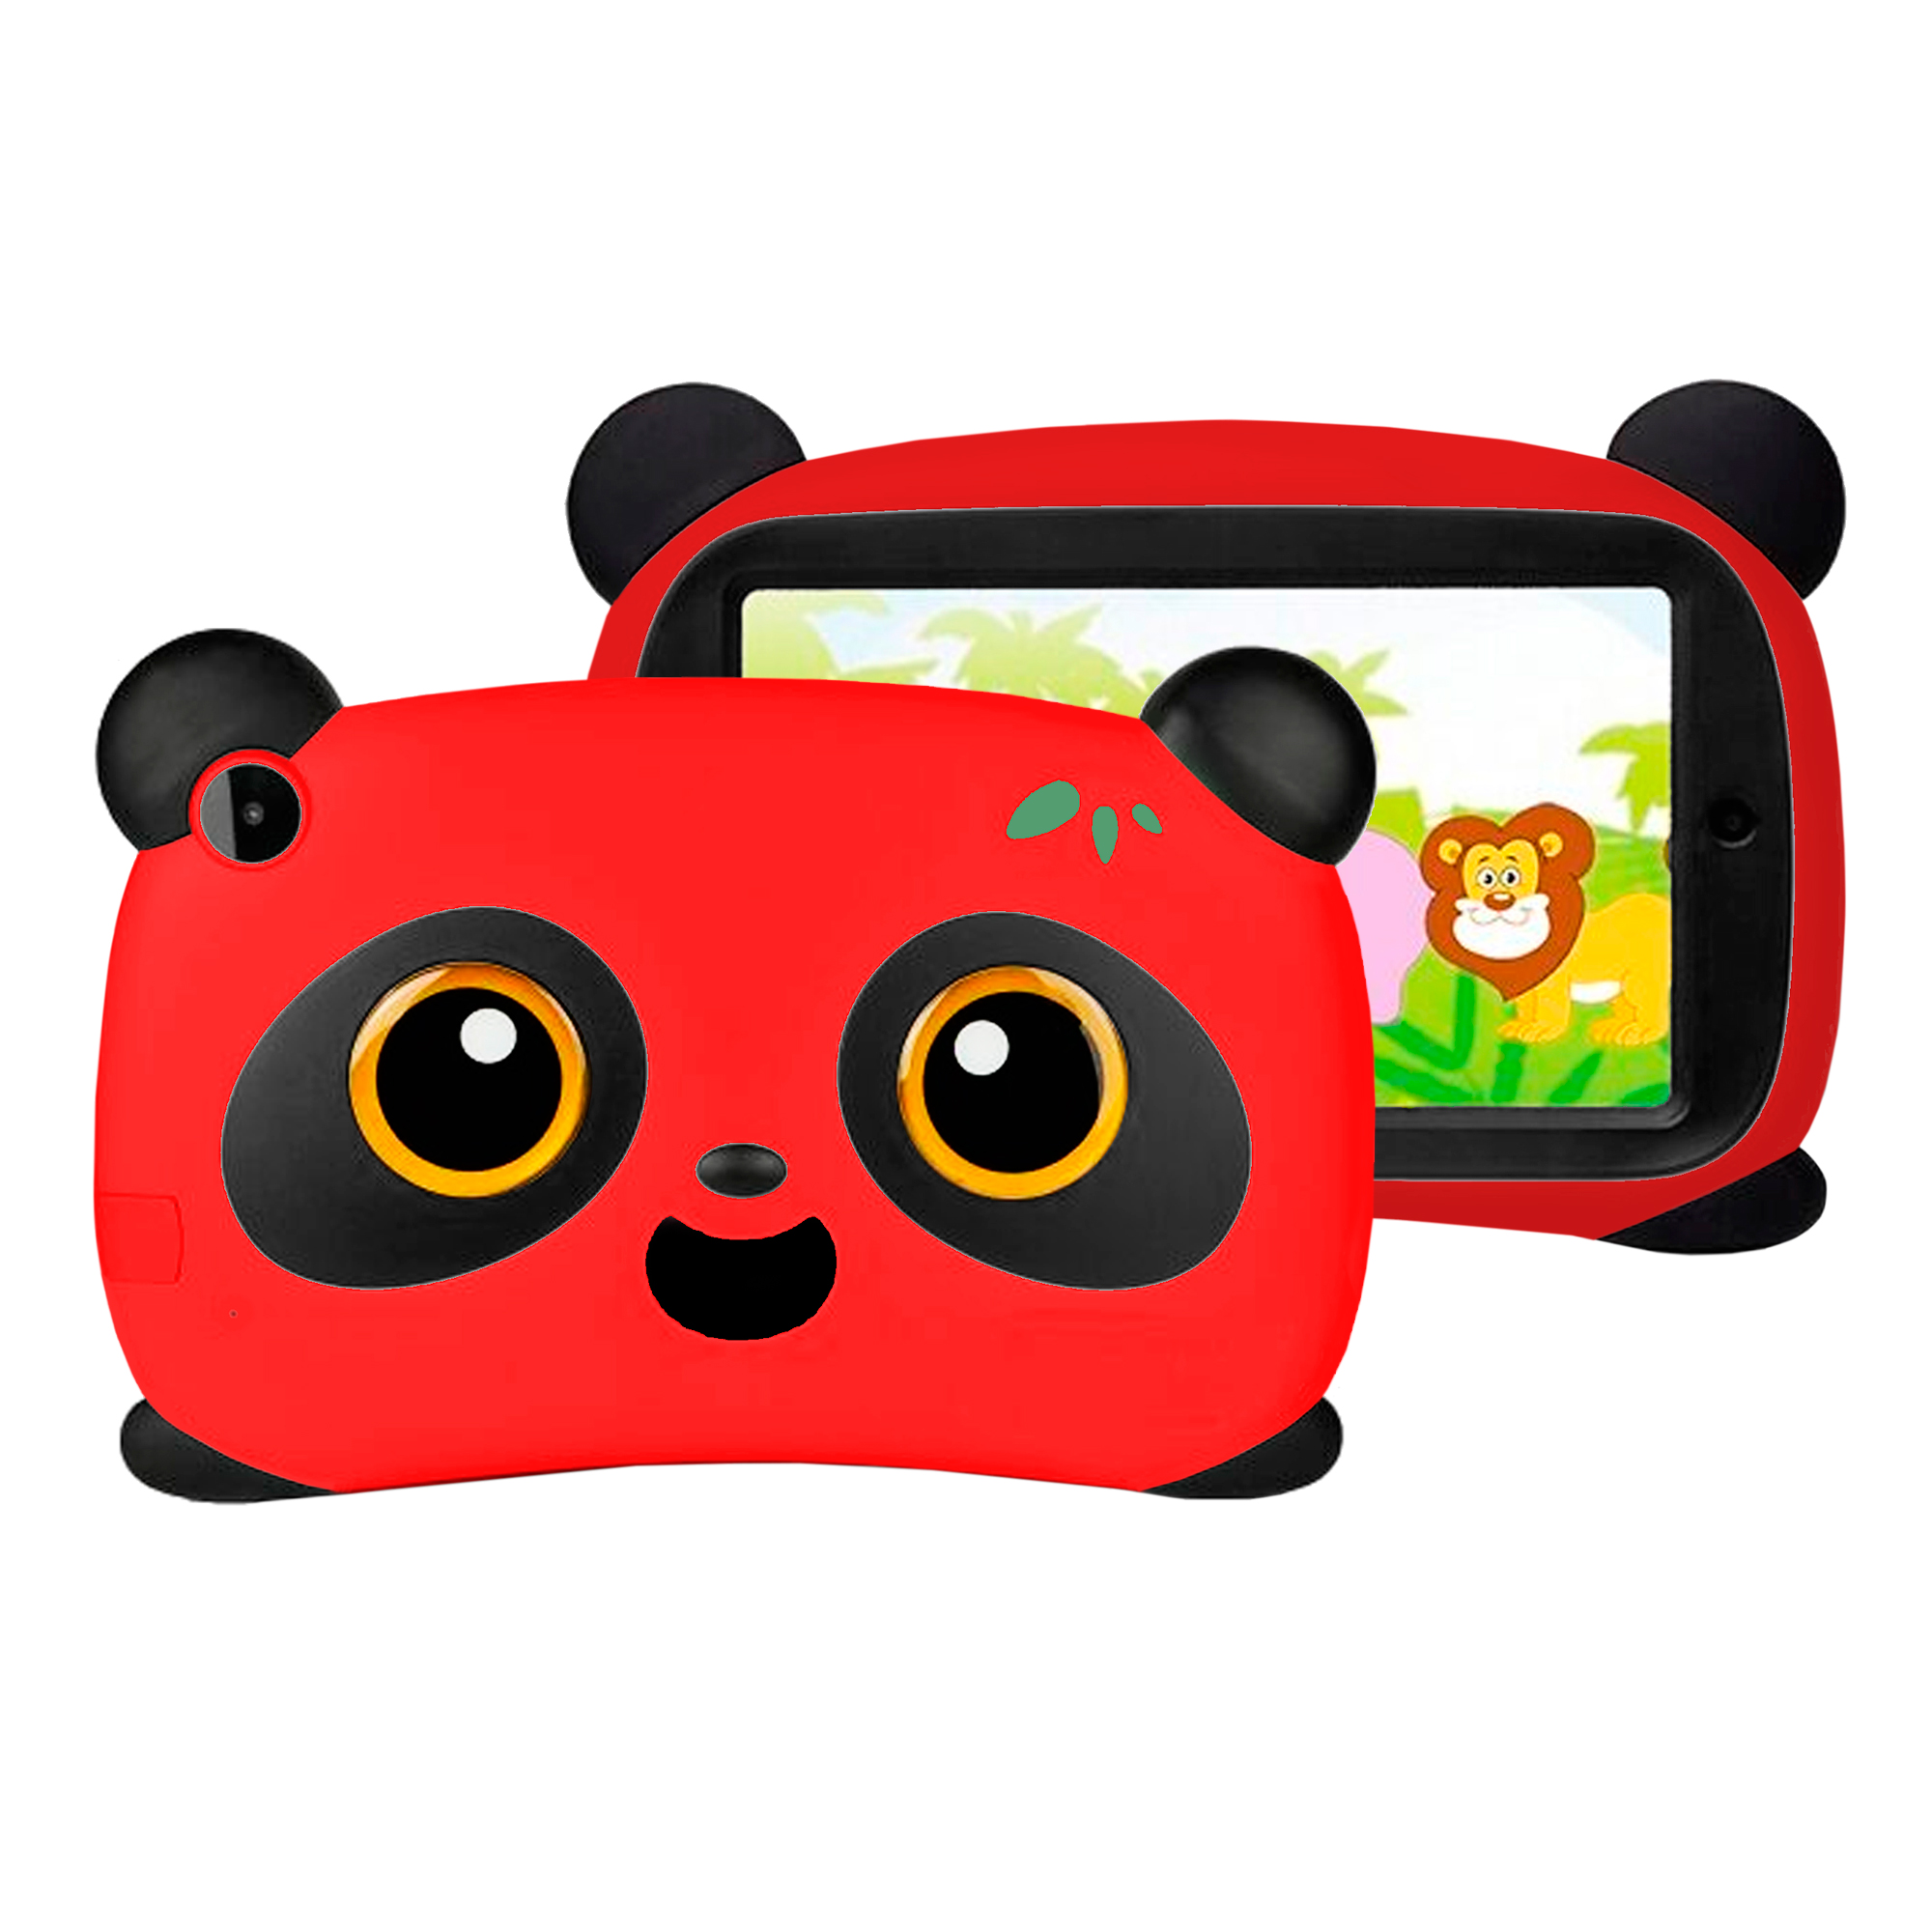 Tablet Niños 7 16gb Camara + App Funda Panda - colores varios